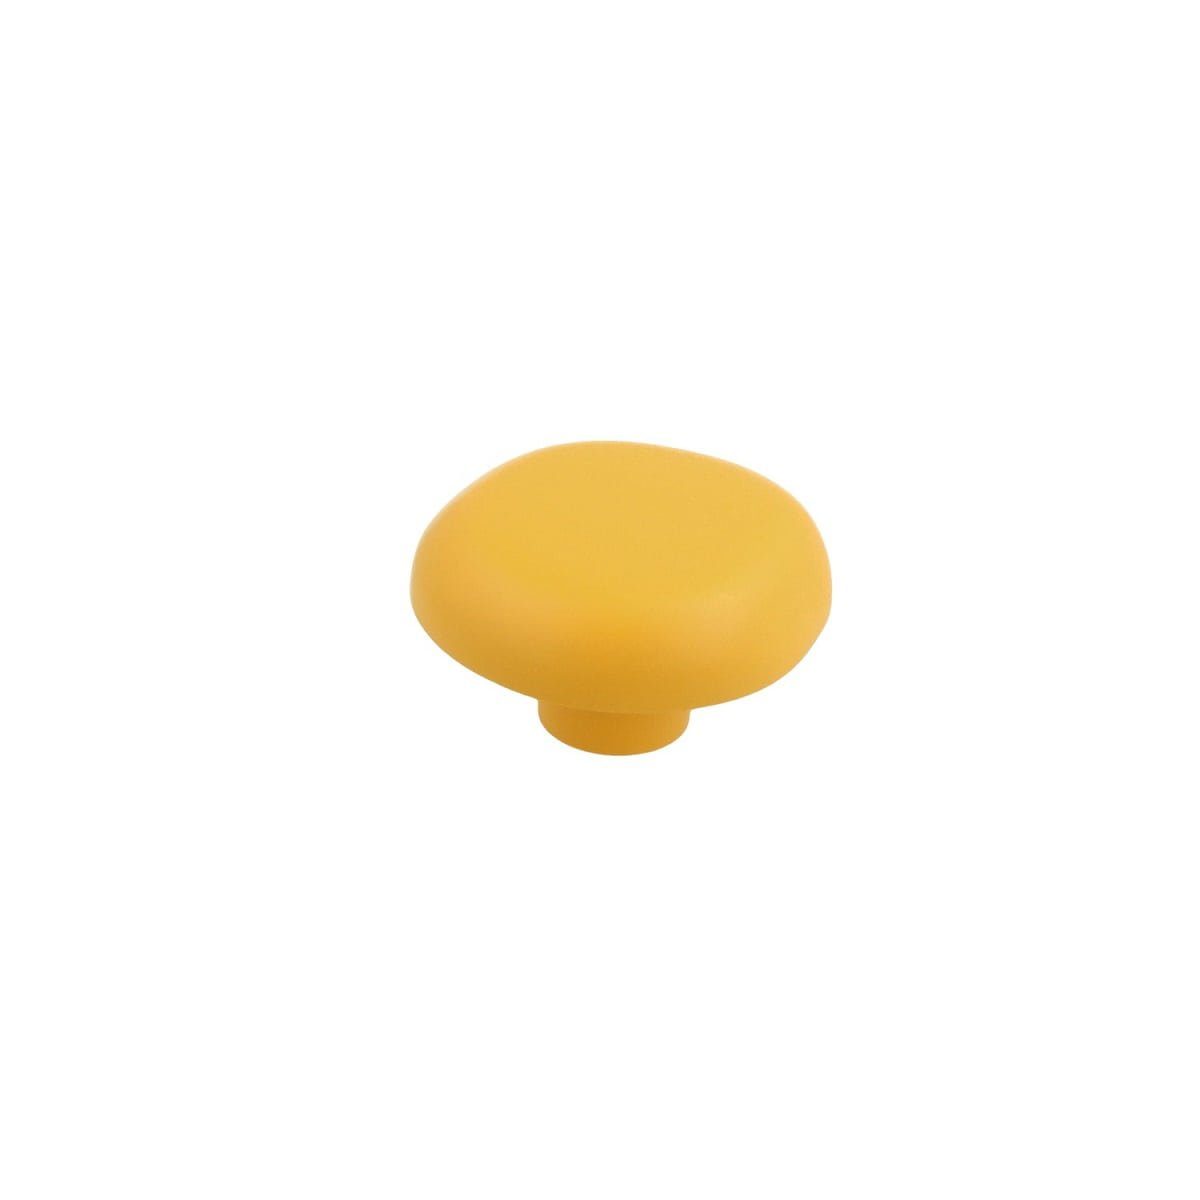 Gelber Türbeschlag Beschläge Modell Kinderzimmerknopf MS Möbelknopf Kommodenk Pilz Schrankknopf